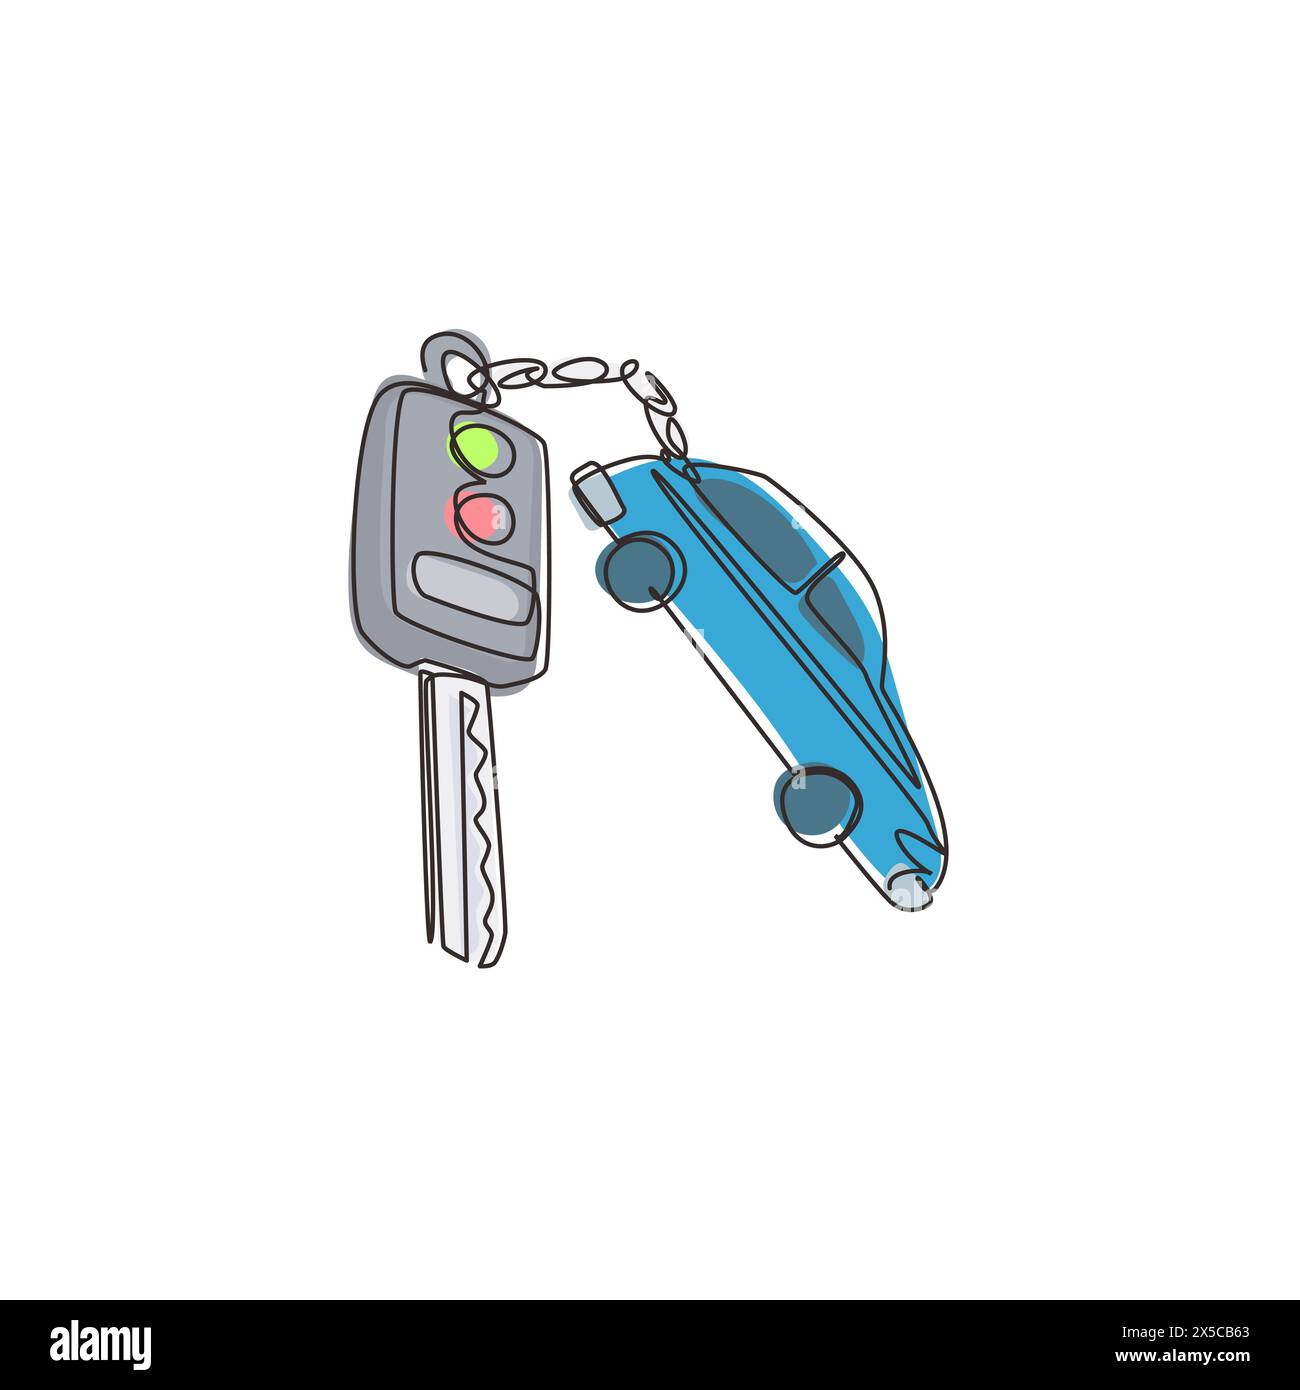 Einzeilige Zeichnung des Schlüsselwagens und des Schlüsselanhängers über dem Metalltisch. Beschneidungspfad enthalten. Elektronisches Auto-Schlüssel-Vorder- und Rückansicht und Alarmanlage. Stock Vektor